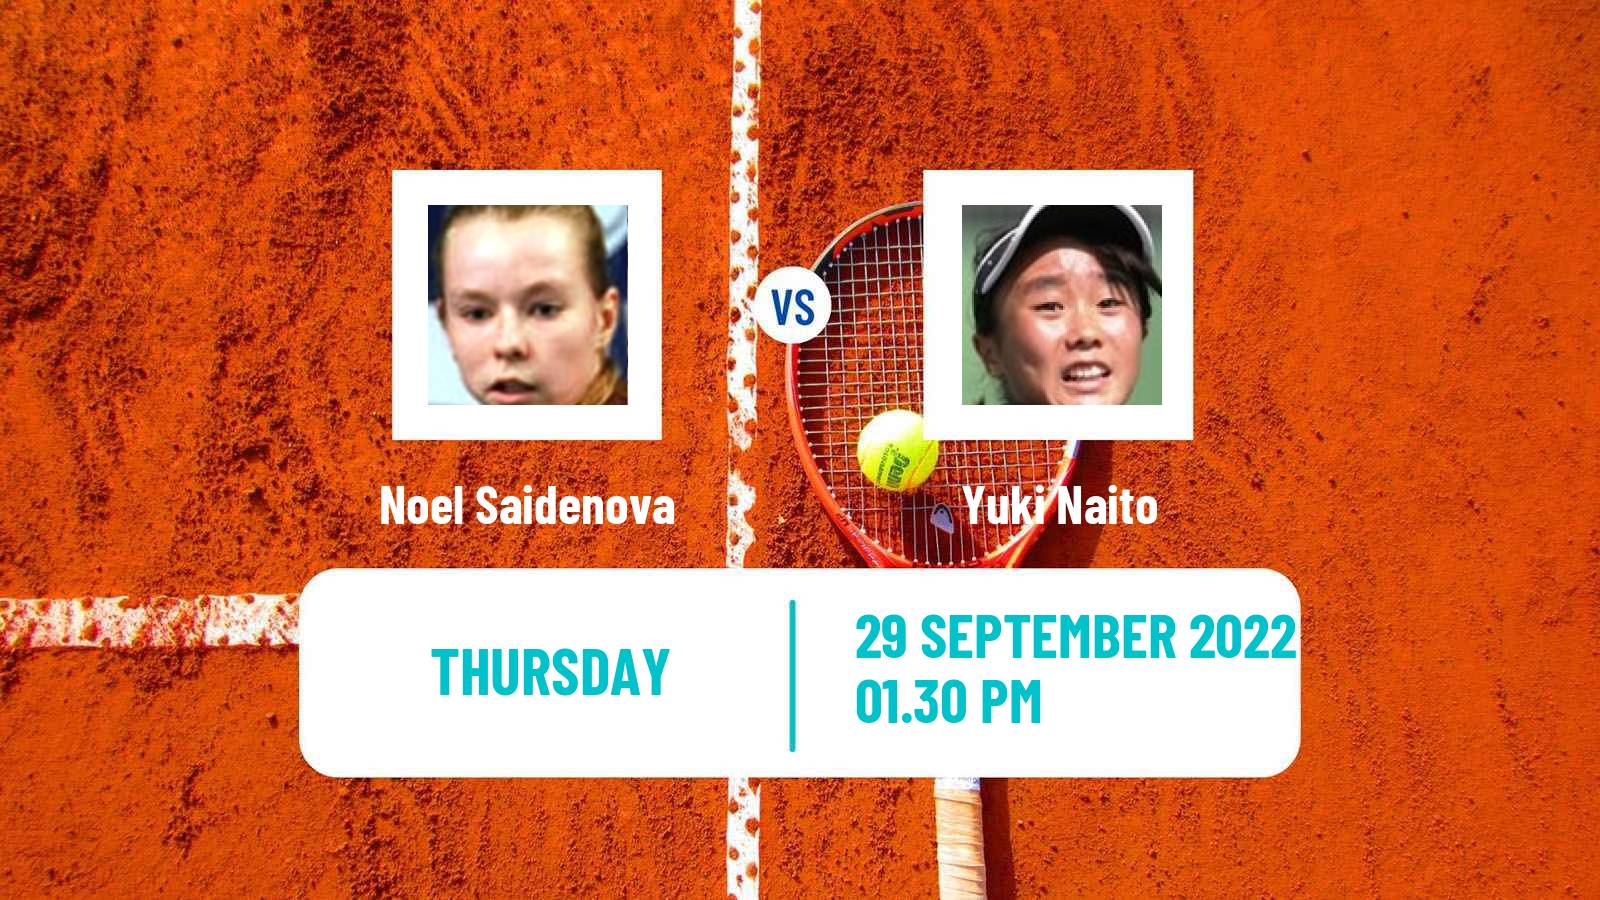 Tennis ITF Tournaments Noel Saidenova - Yuki Naito